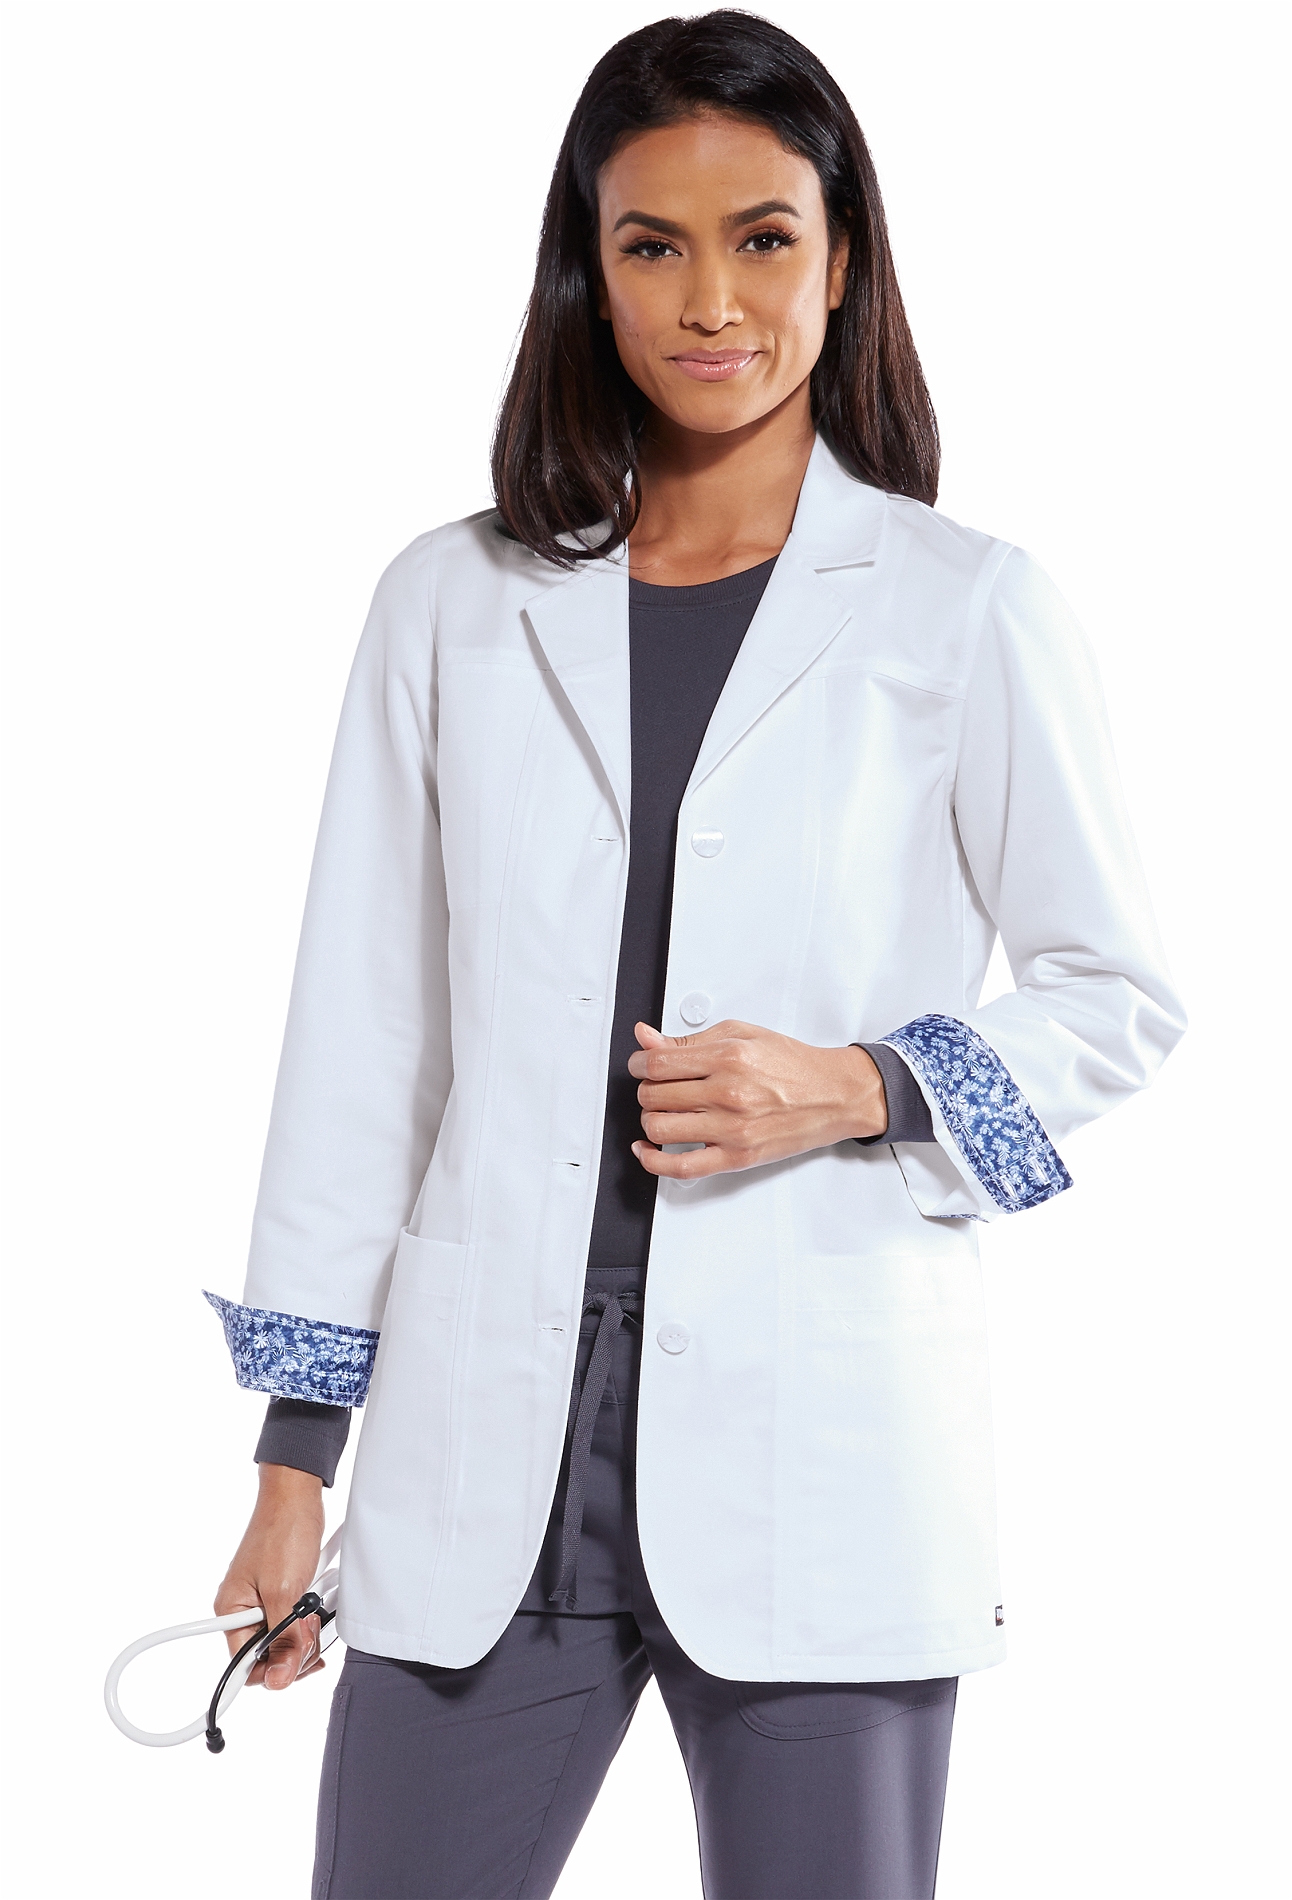 Grey's Anatomy Women's Ivy Labcoat-GRC950